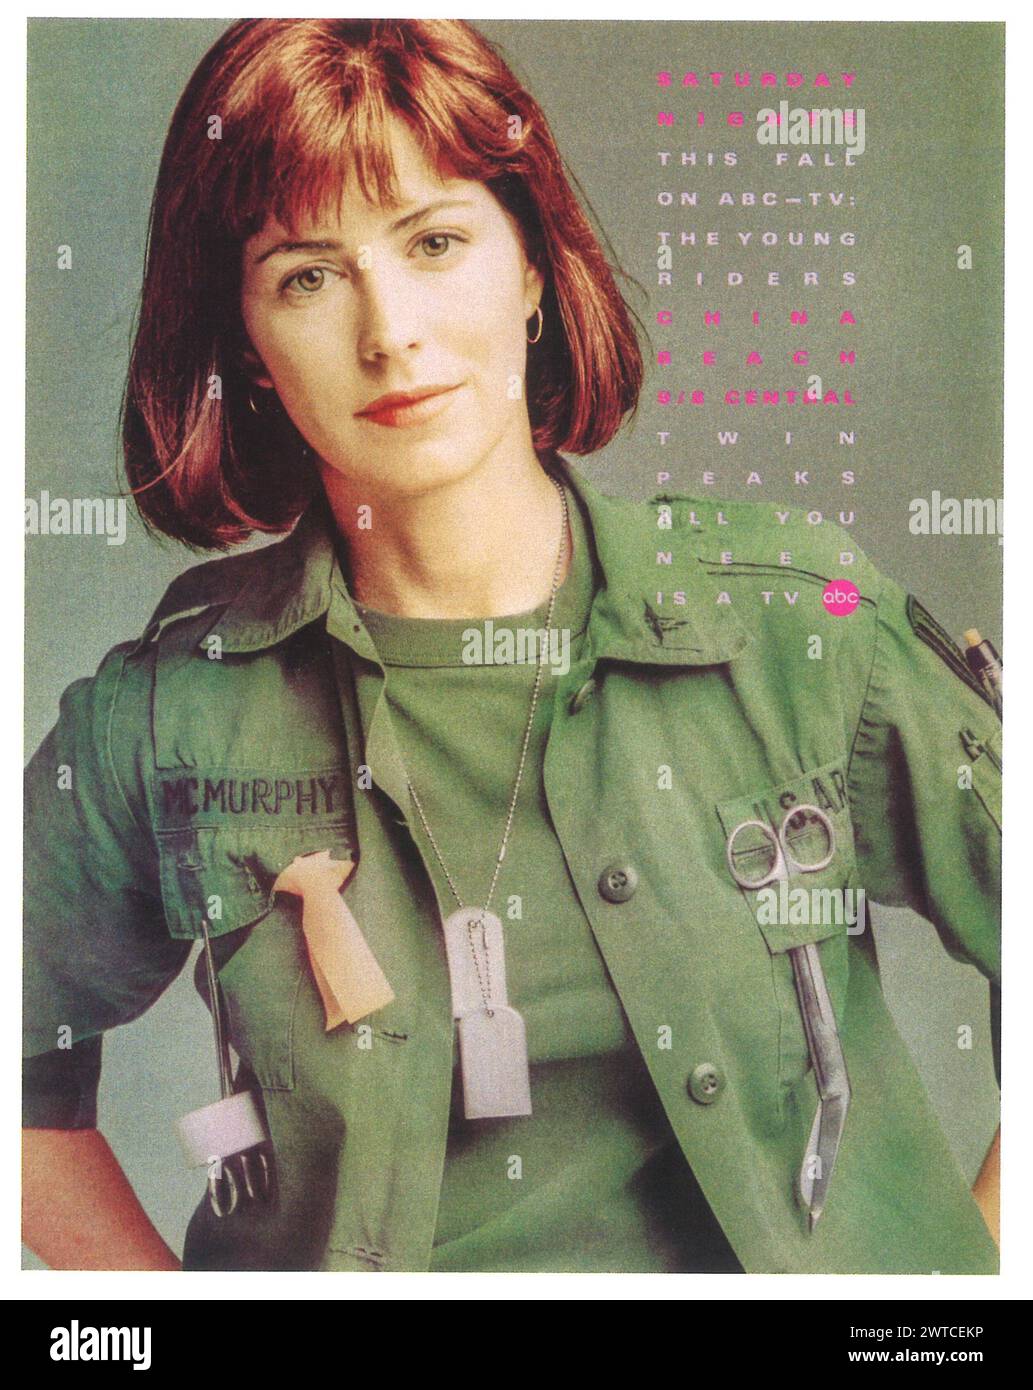 1990 Ad for DANA DELANY - CHINA BEACH - Murphy - ABC TV drama - U.S. Army Stock Photo